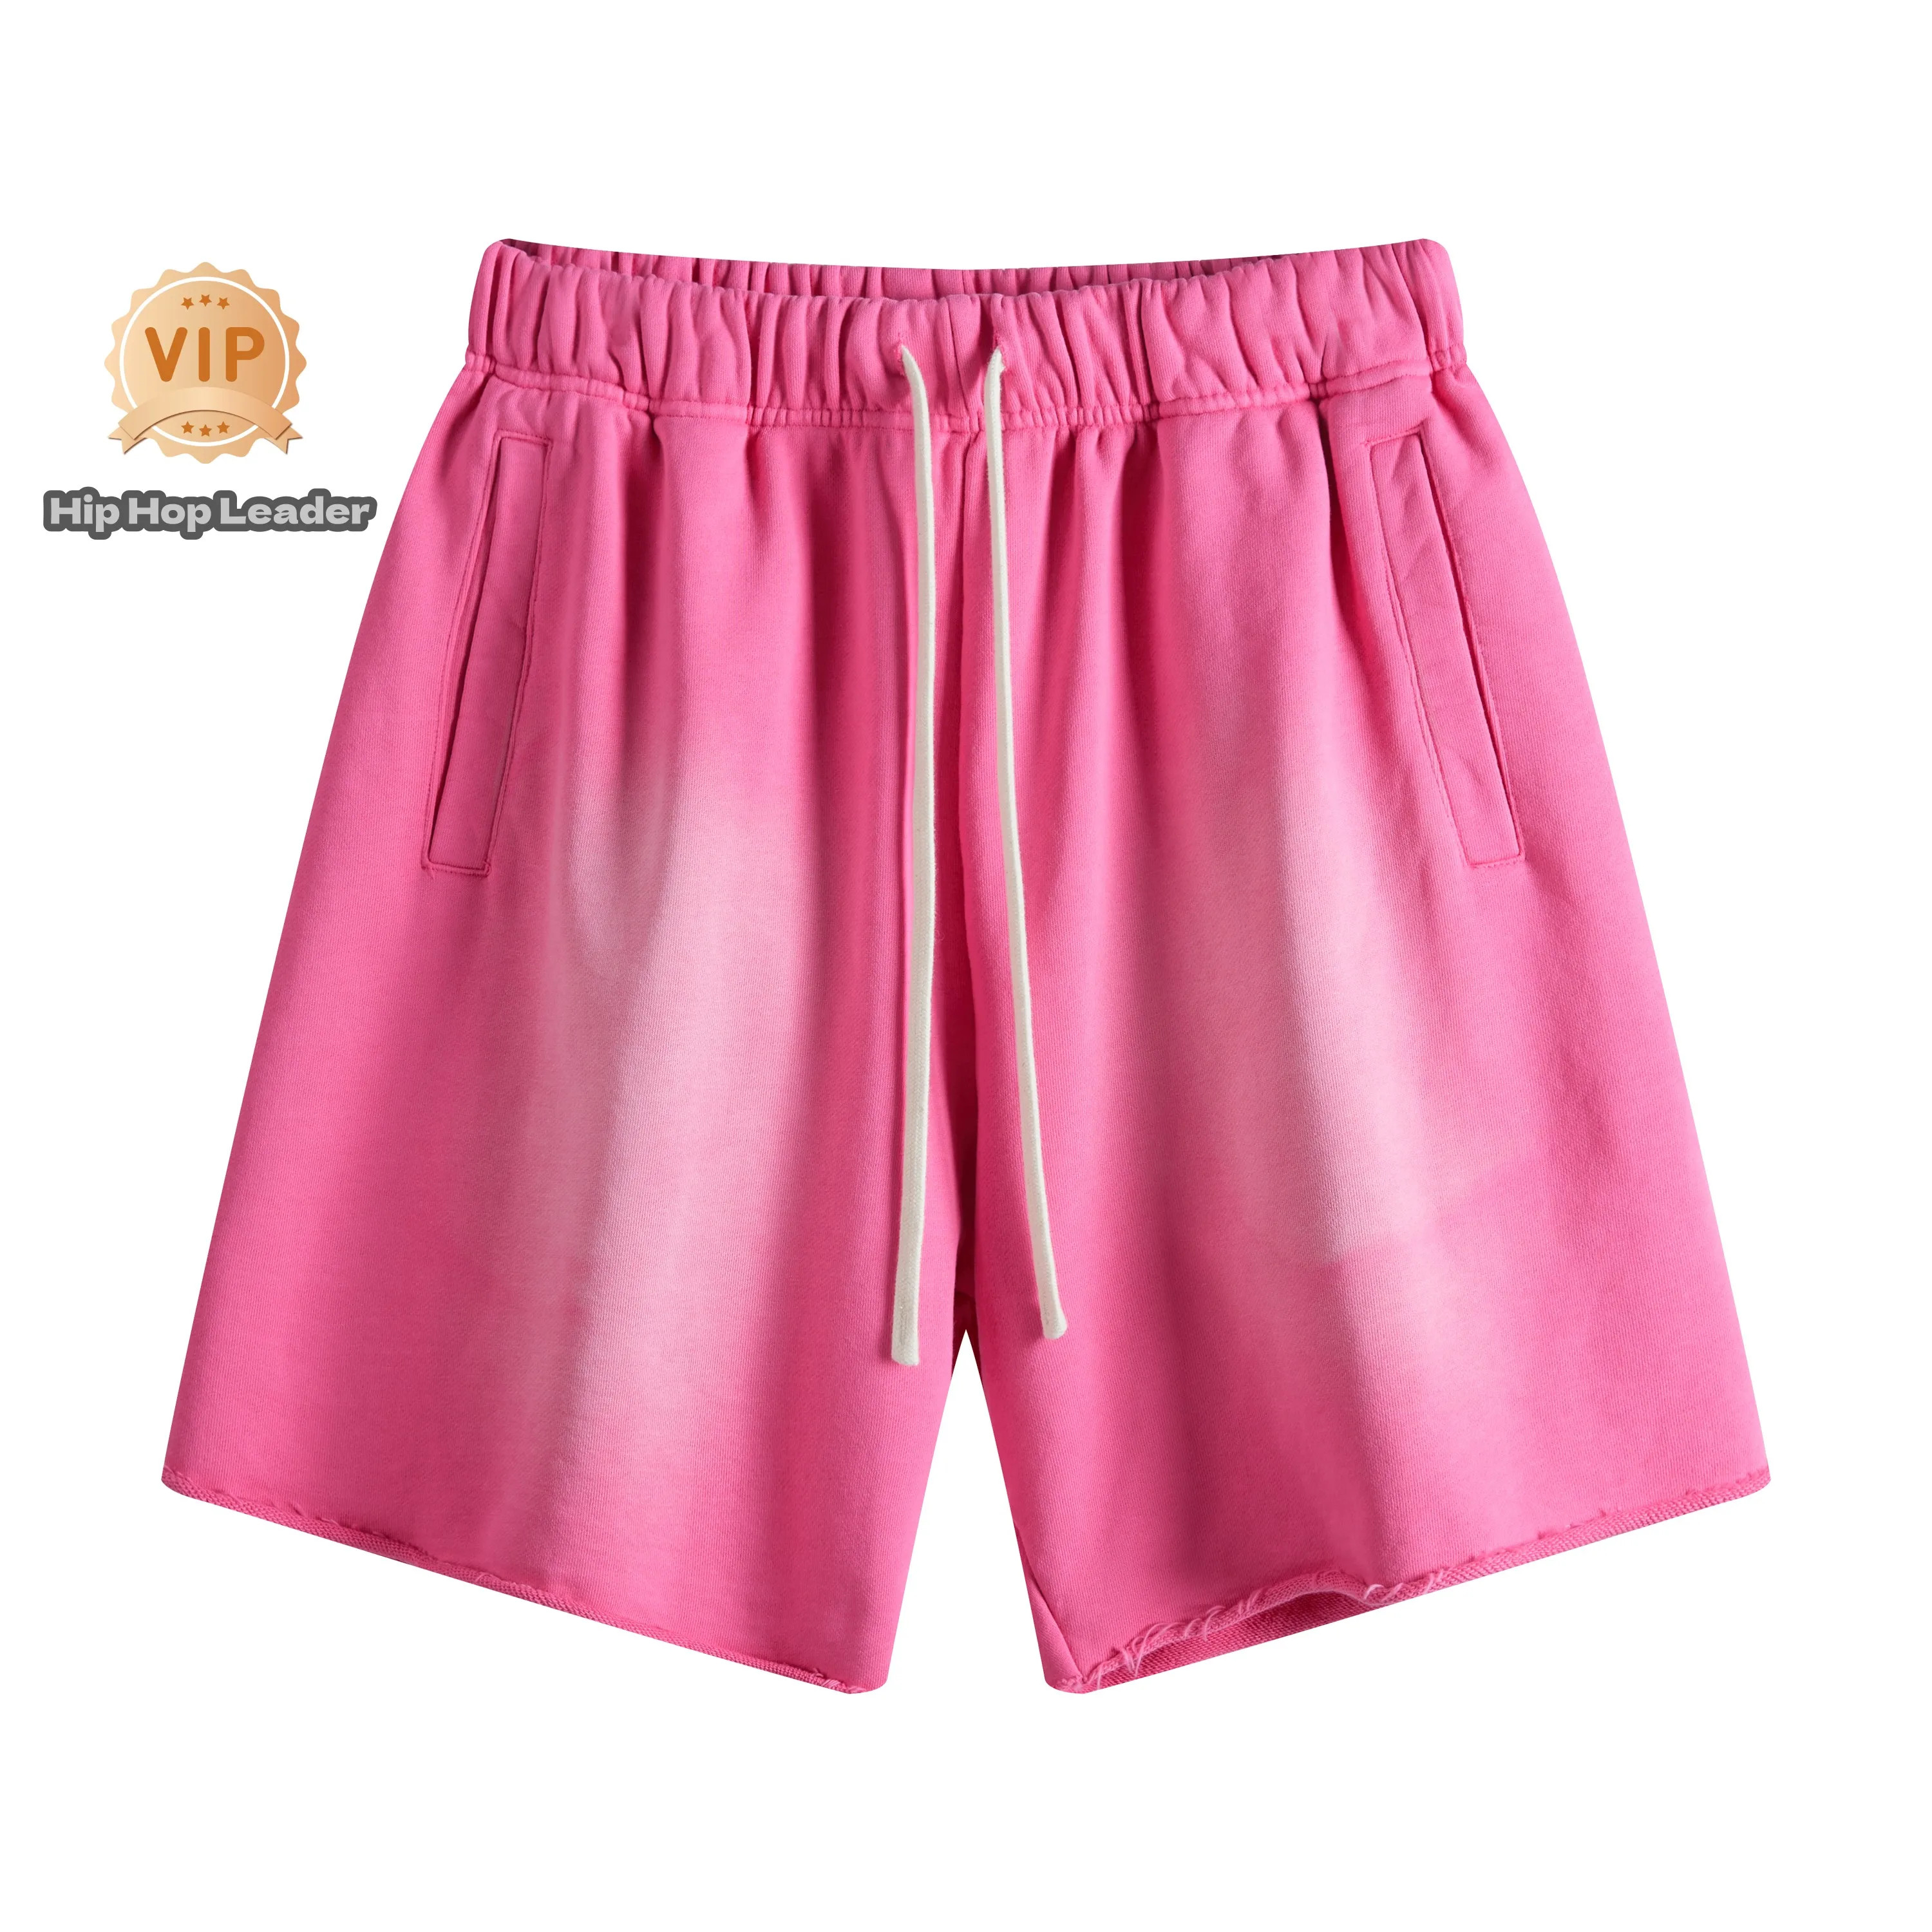 היפ הופ מנהיג Officiel חנות רטרו Y2k יוניסקס מוצק צבע מוצק צבע מזדמנים אופנה אותו סגנון לזוגות בקיץ במכנסיים קצרים.2